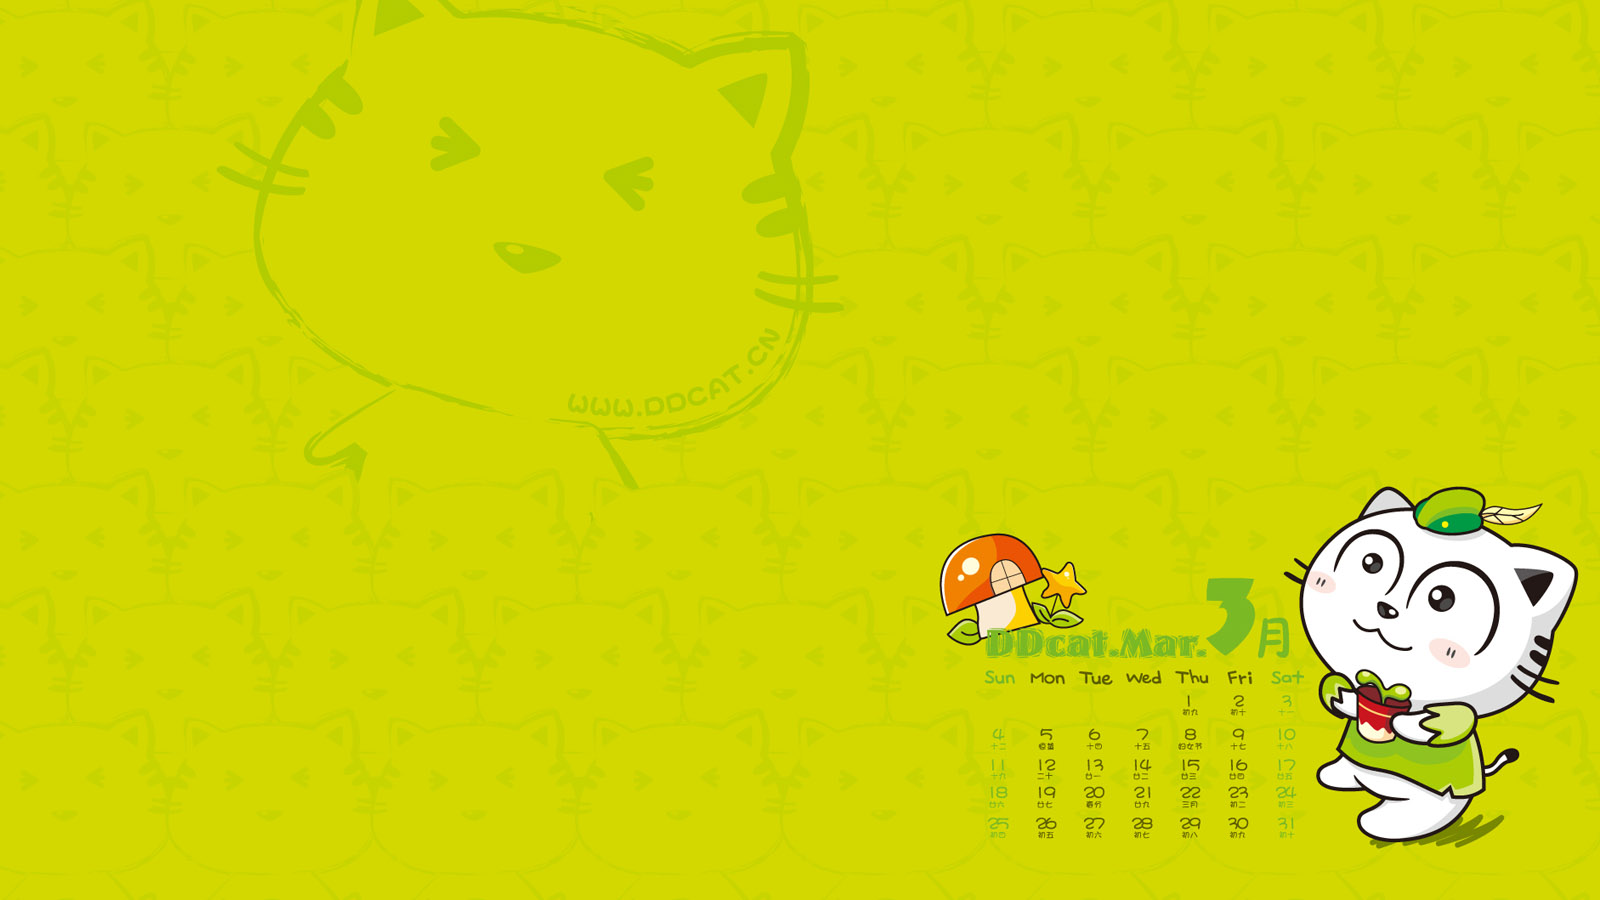 Ding Dong cat March 2012 calendar wallpaper